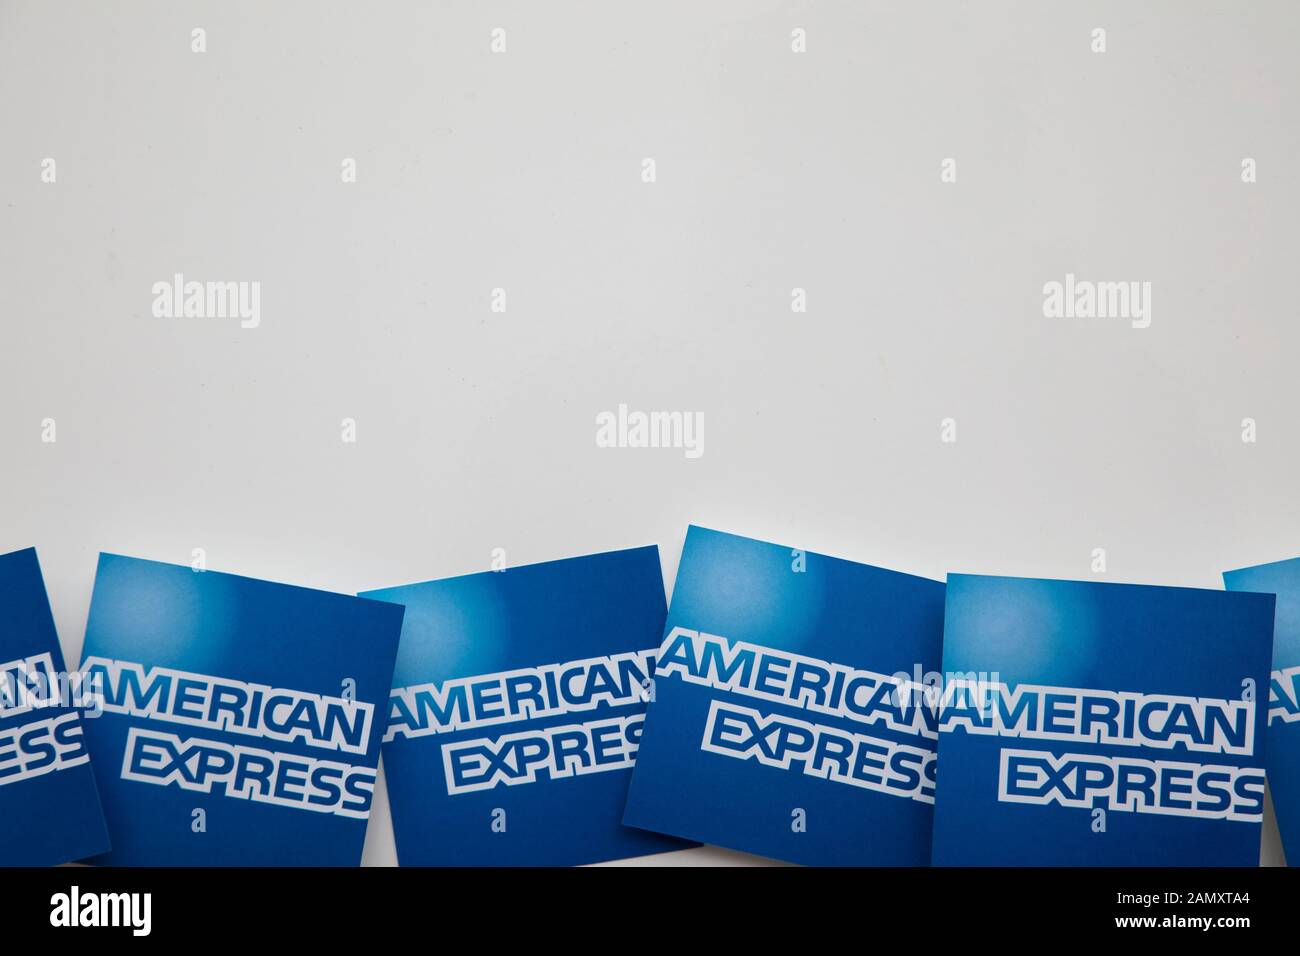 Londres, Royaume-Uni - 15 janvier 2020: Logo de la marque American Express imprimé sur papier Banque D'Images